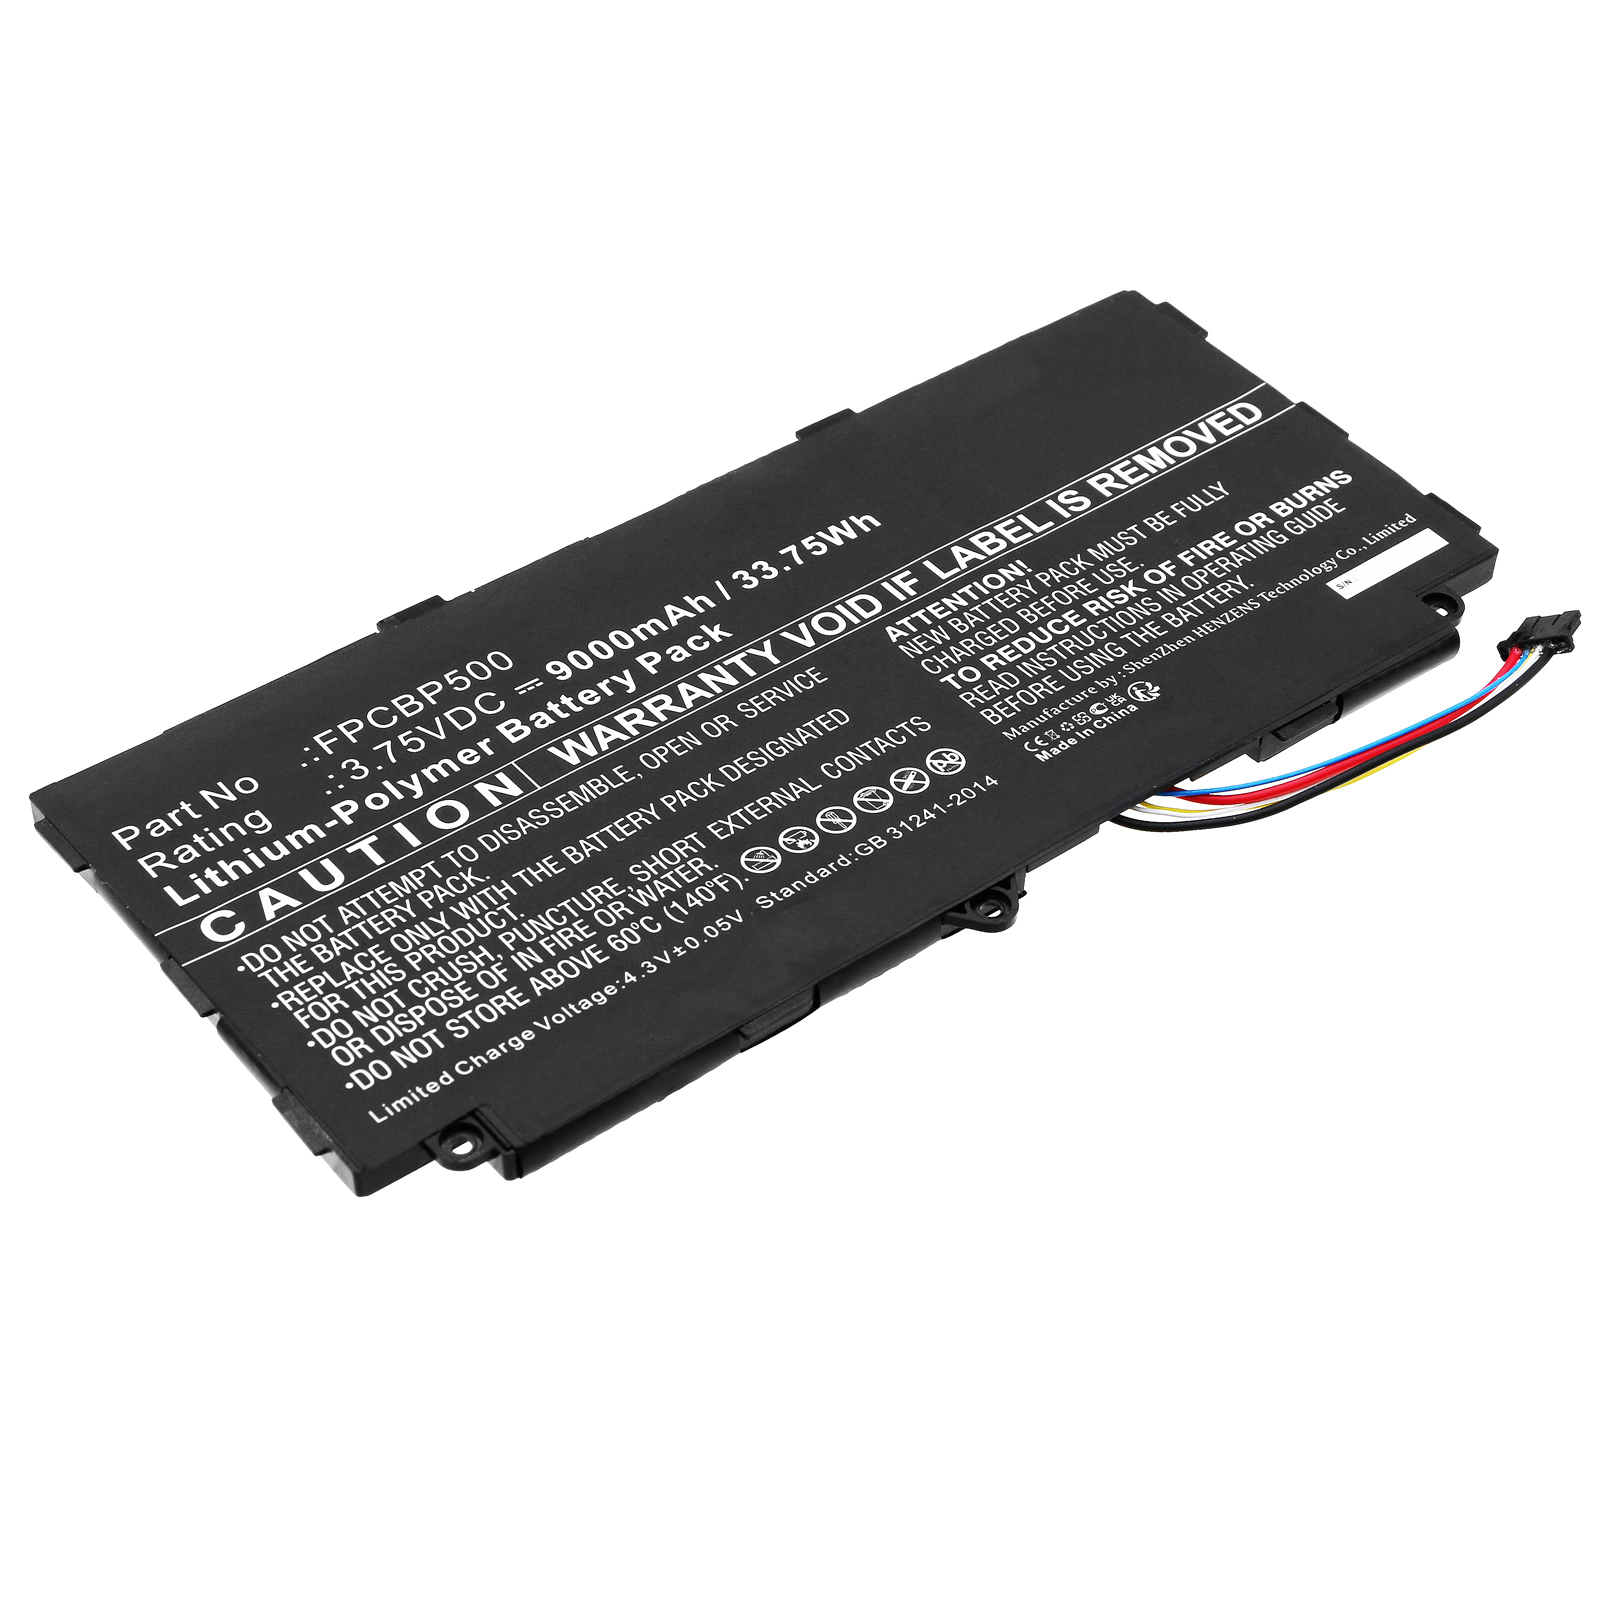 Synergy Digital Laptop Battery, Compatible with Fujitsu FPB0327 Laptop Battery (Li-Pol, 3.75V, 9000mAh)